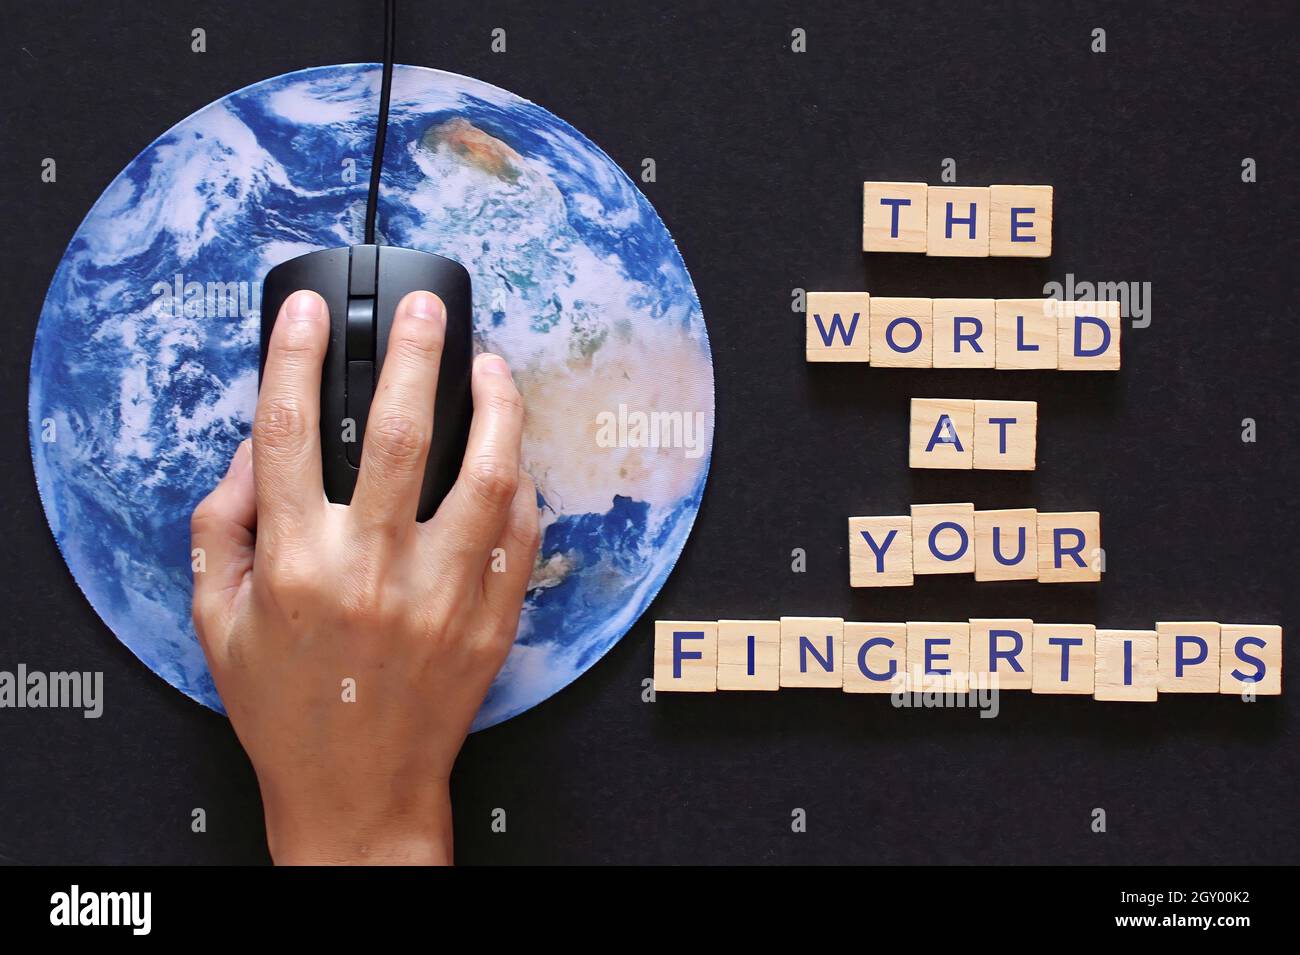 Cliquez à la main la souris d'ordinateur sur la planète Terre globe et cube en bois avec le texte LE MONDE À VOTRE BOUT DES DOIGTS. Banque D'Images